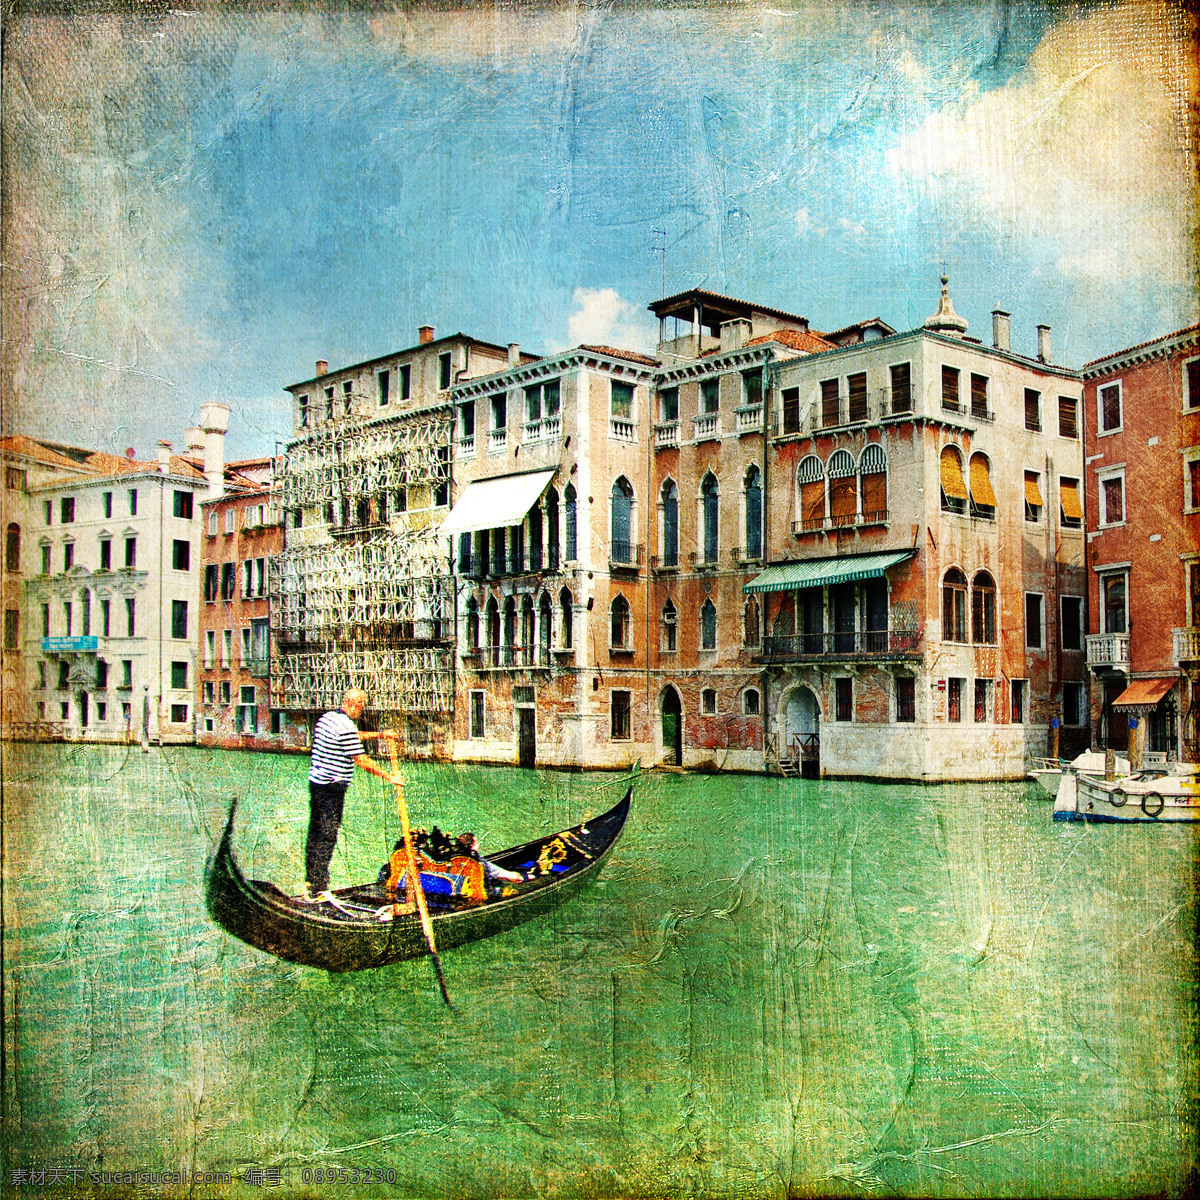 威尼斯 小河 风景 照片 威尼斯风景 小河风景 小船 水城威尼斯 意大利 旅游景点 美丽风景 怀旧 城市 相片 怀旧风景照片 其他风光 自然景观 黑色